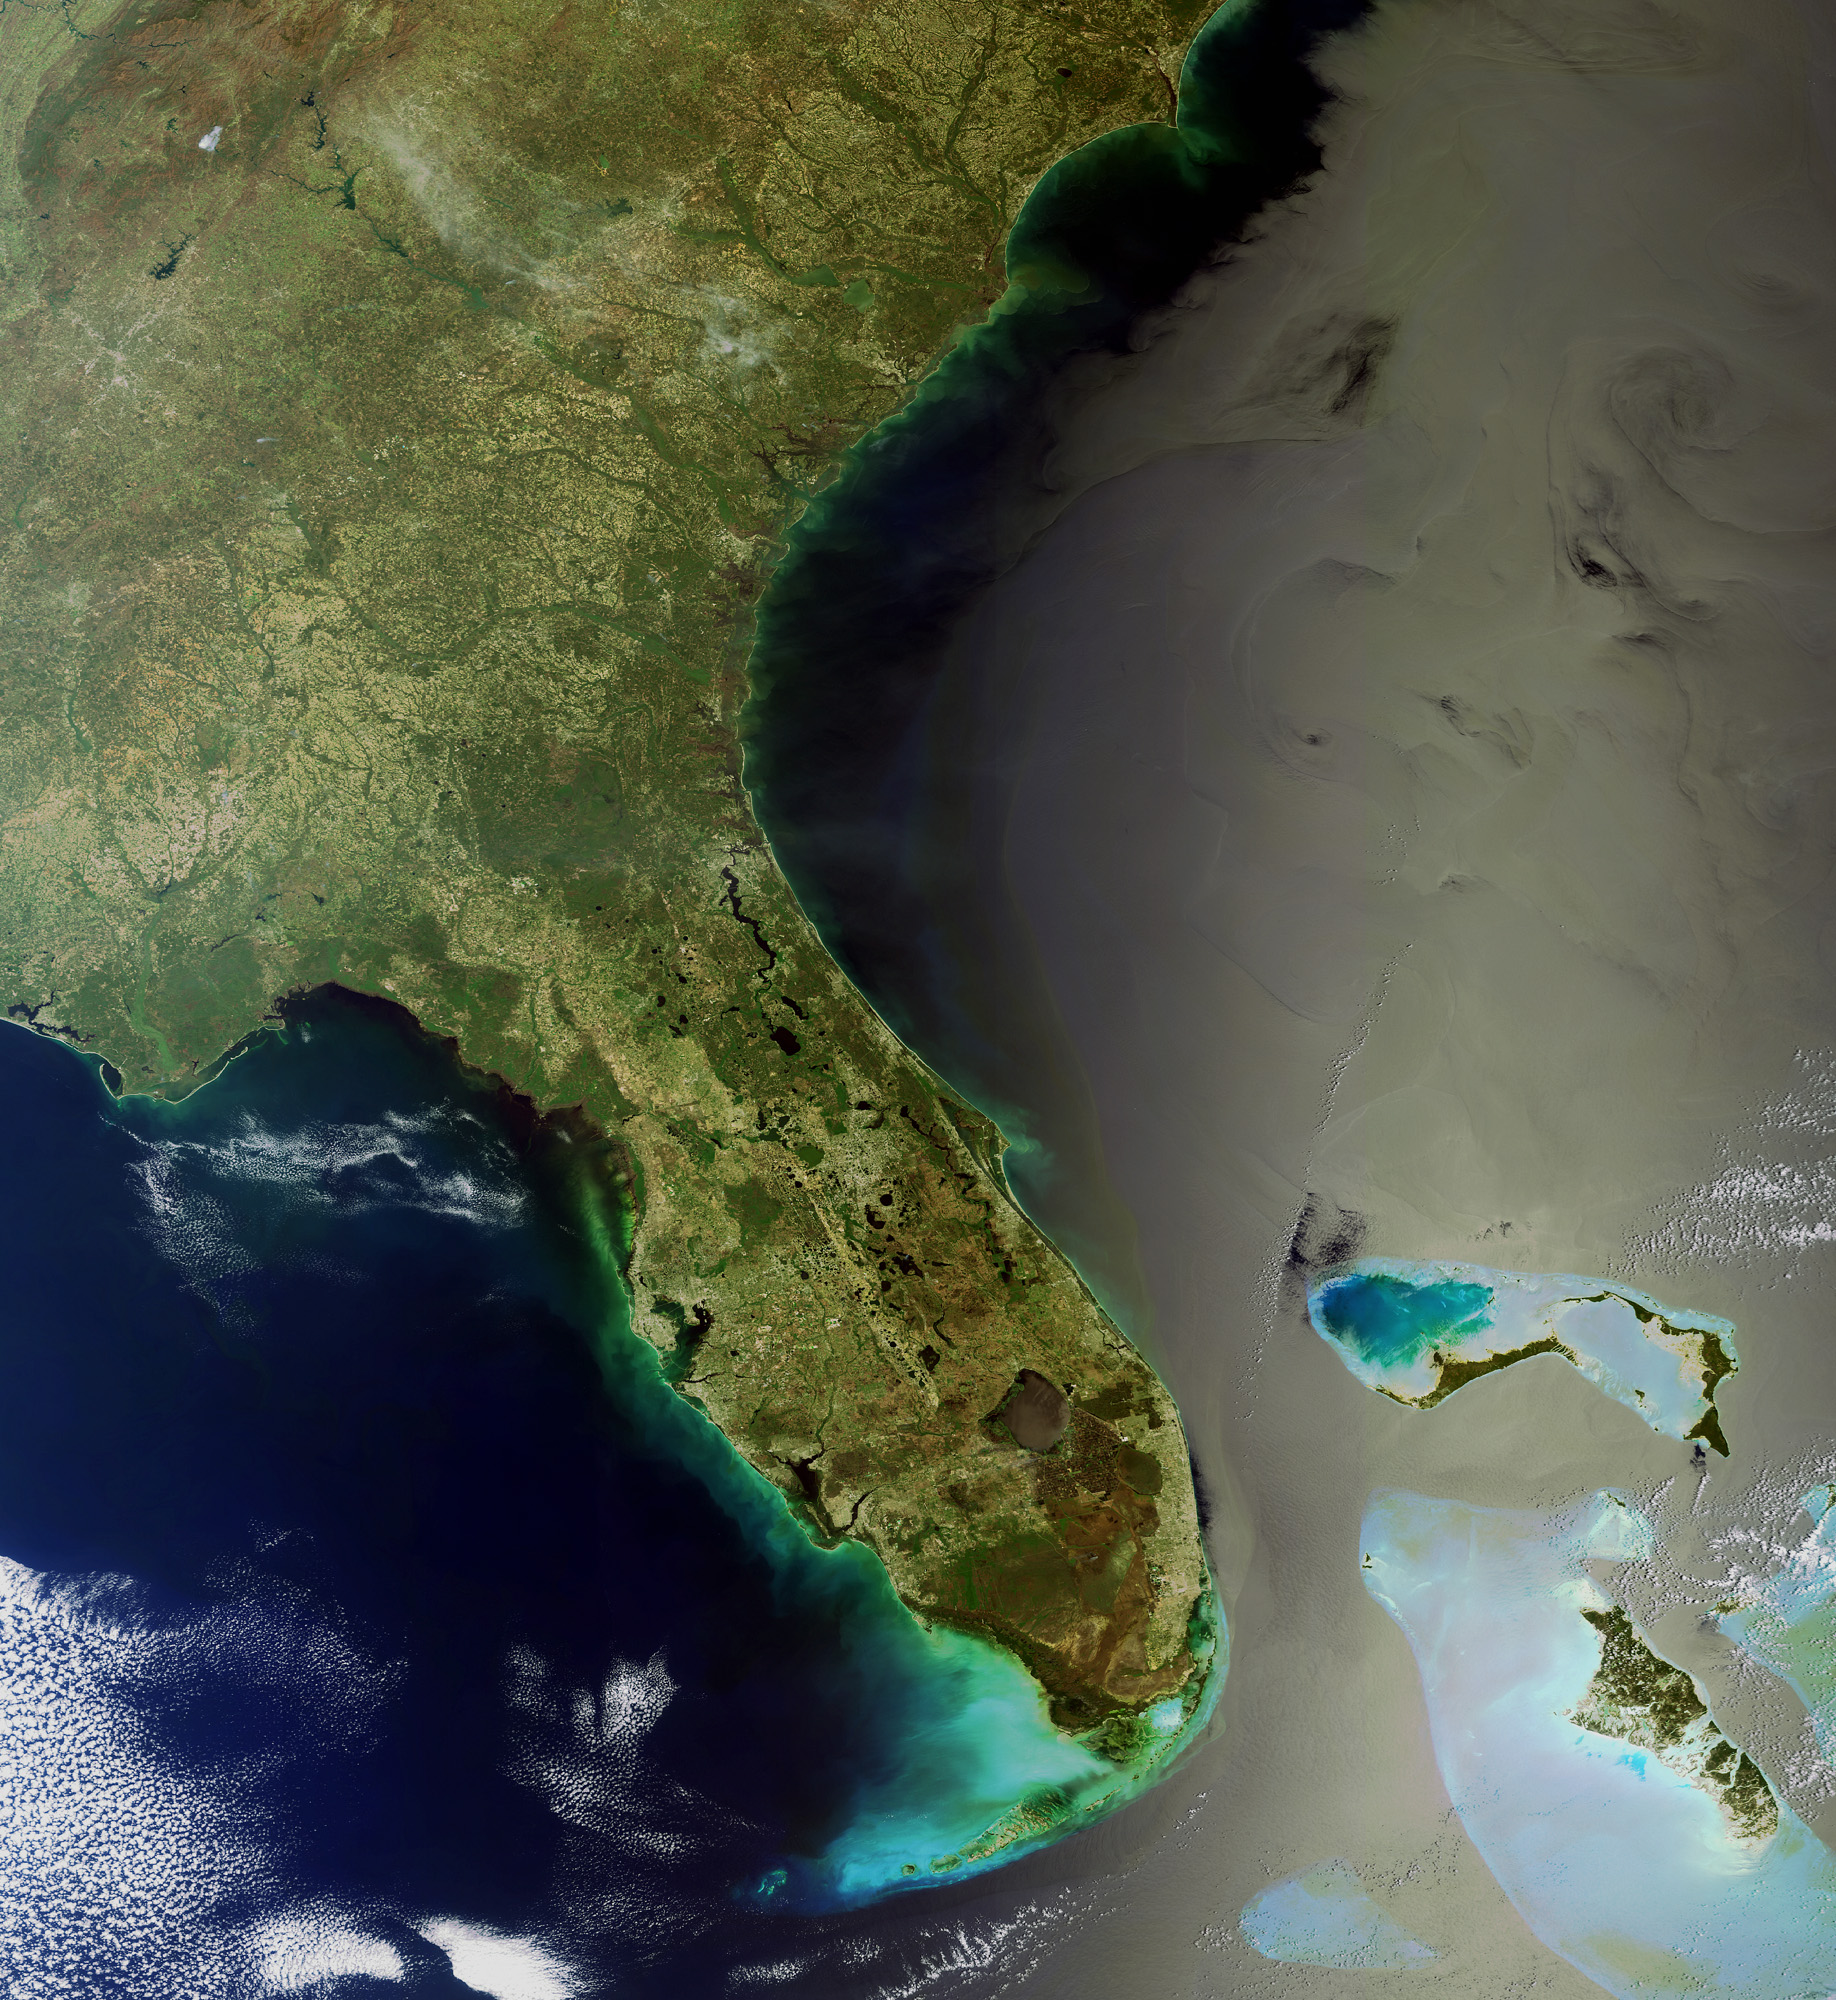 La Floride vue par Envisat. L'archipel des Keys prolonge la côte vers le sud-ouest (le vert émeraude signale les faibles profondeurs). Le golfe du Mexique est à gauche et l'Atlantique à droite, avec, bien visibles, quelques îles des Bahamas. A cet endroit, le courant se dirige vers l'est pour rejoindre le Gulf Stream. © Esa